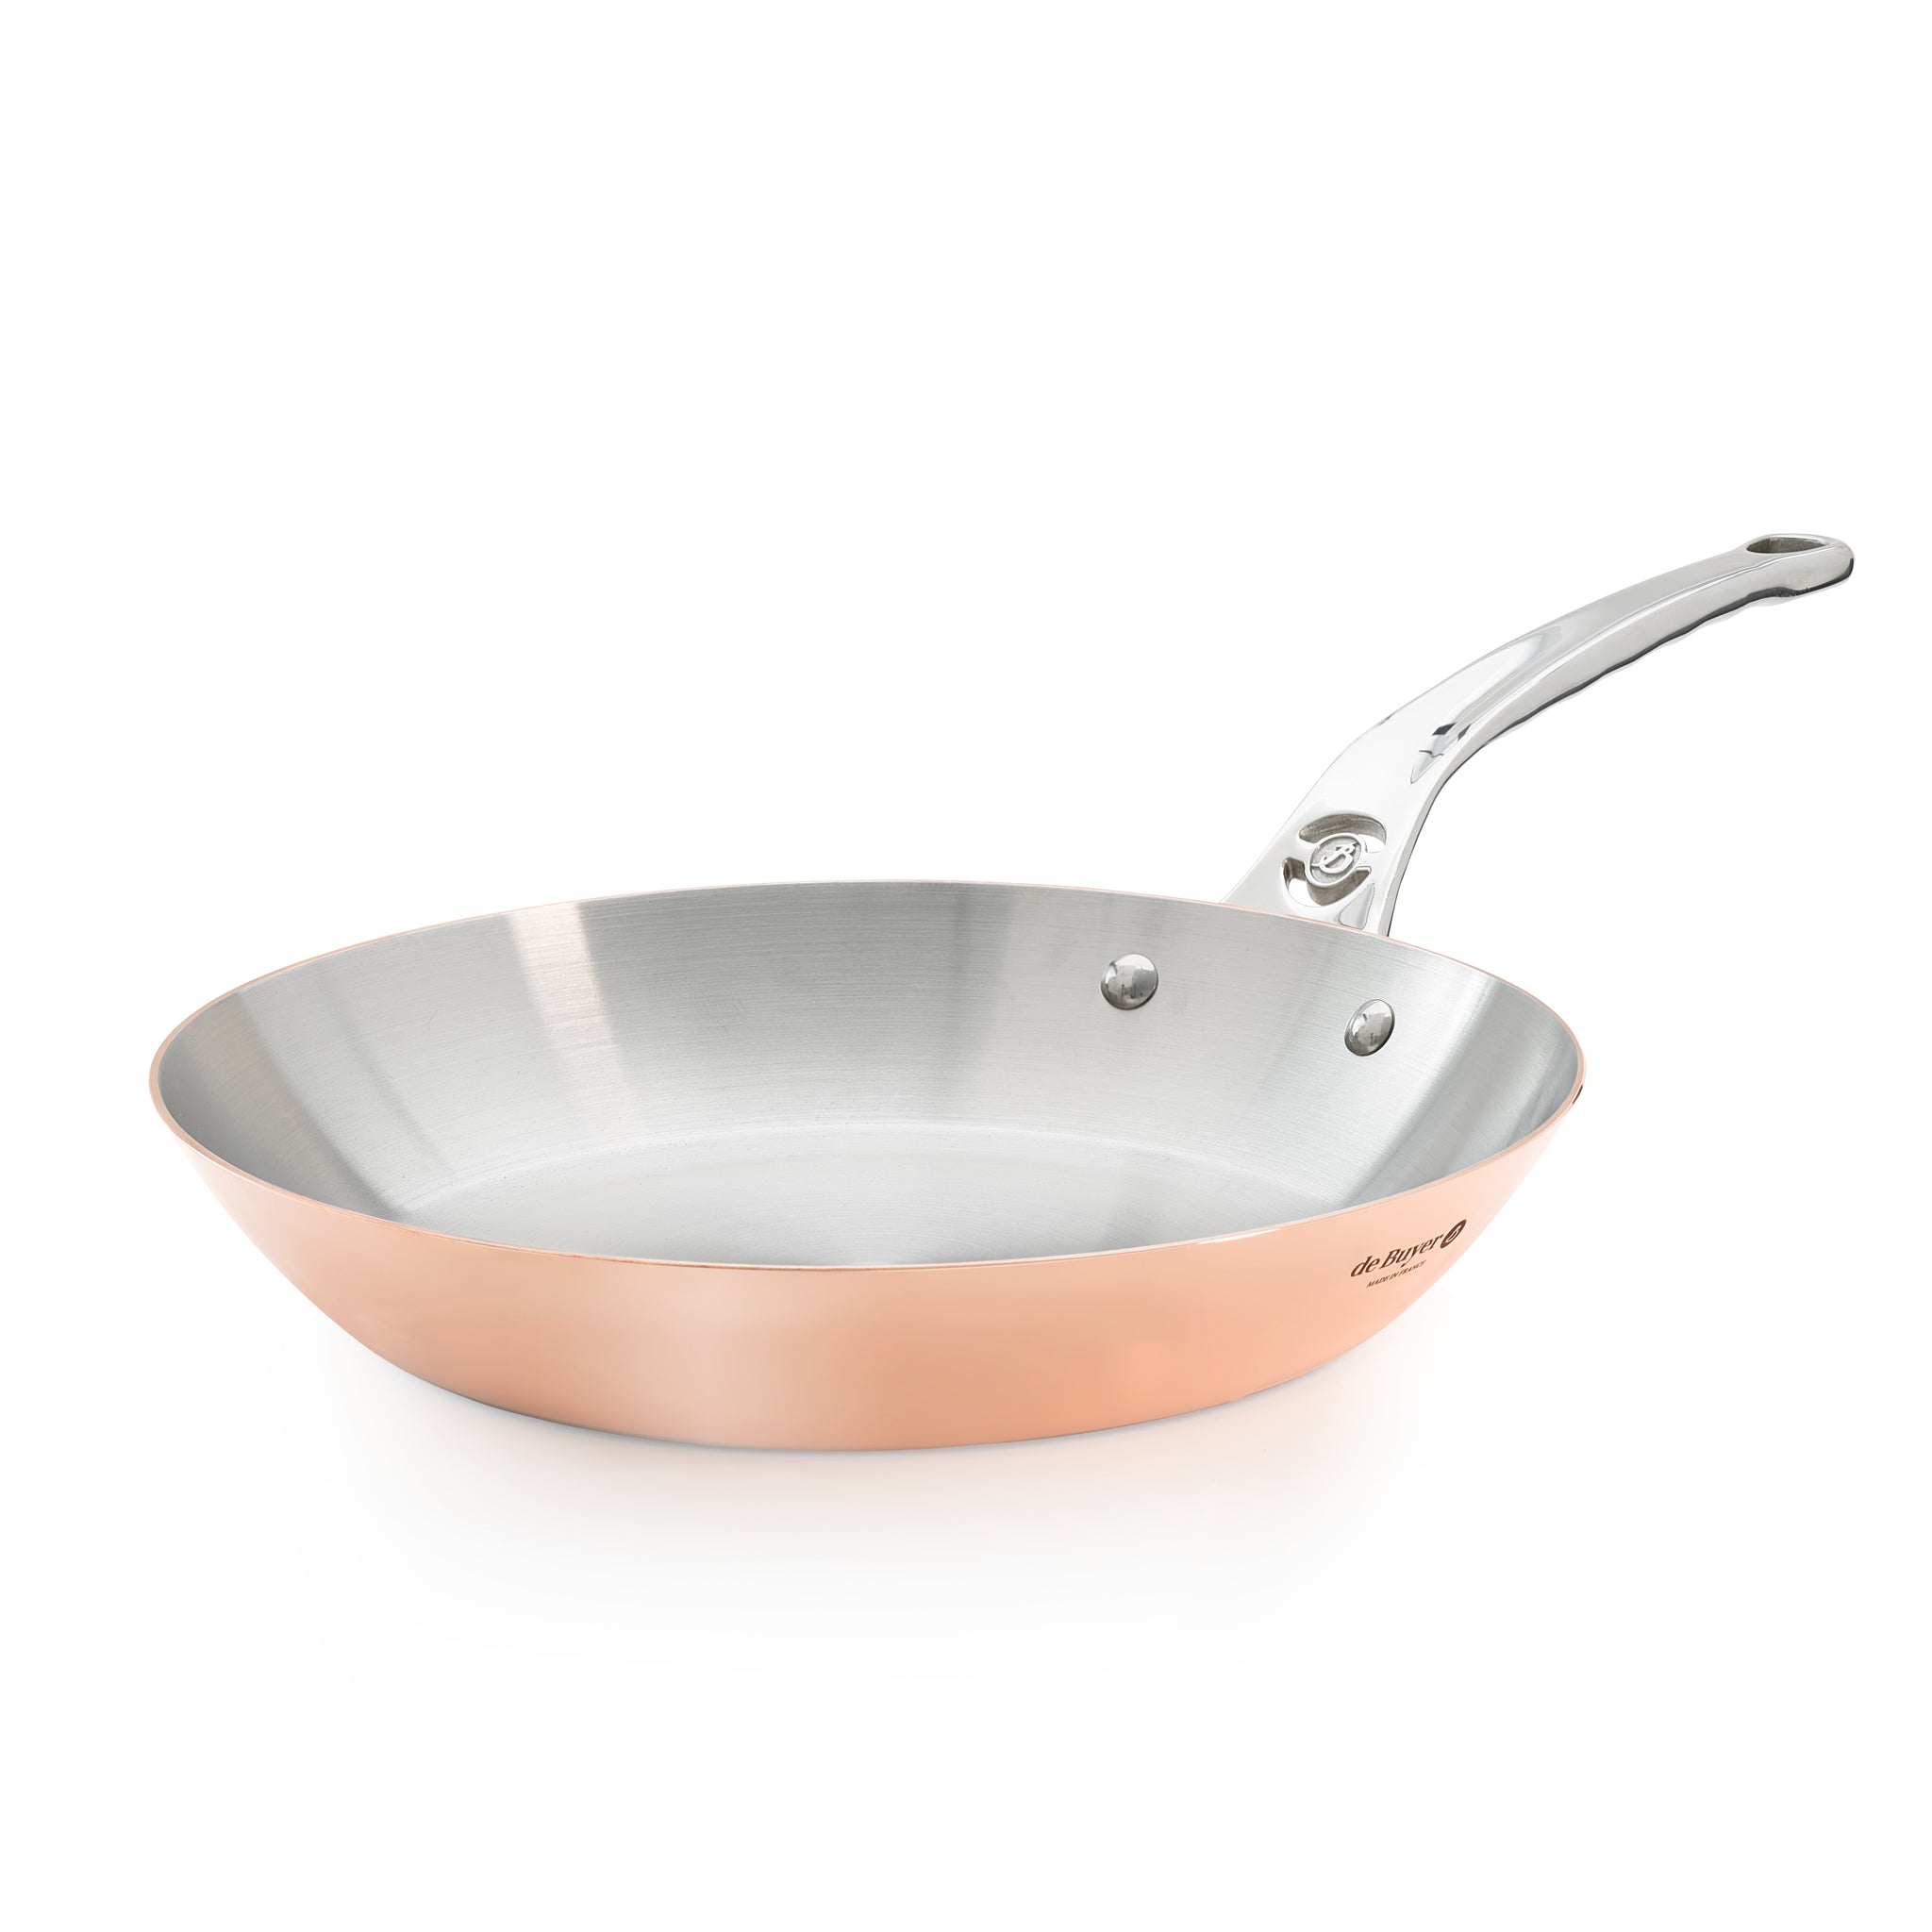 De Buyer Inocuivre Copper Frying Pan with Stainless Steel Handle 28cm